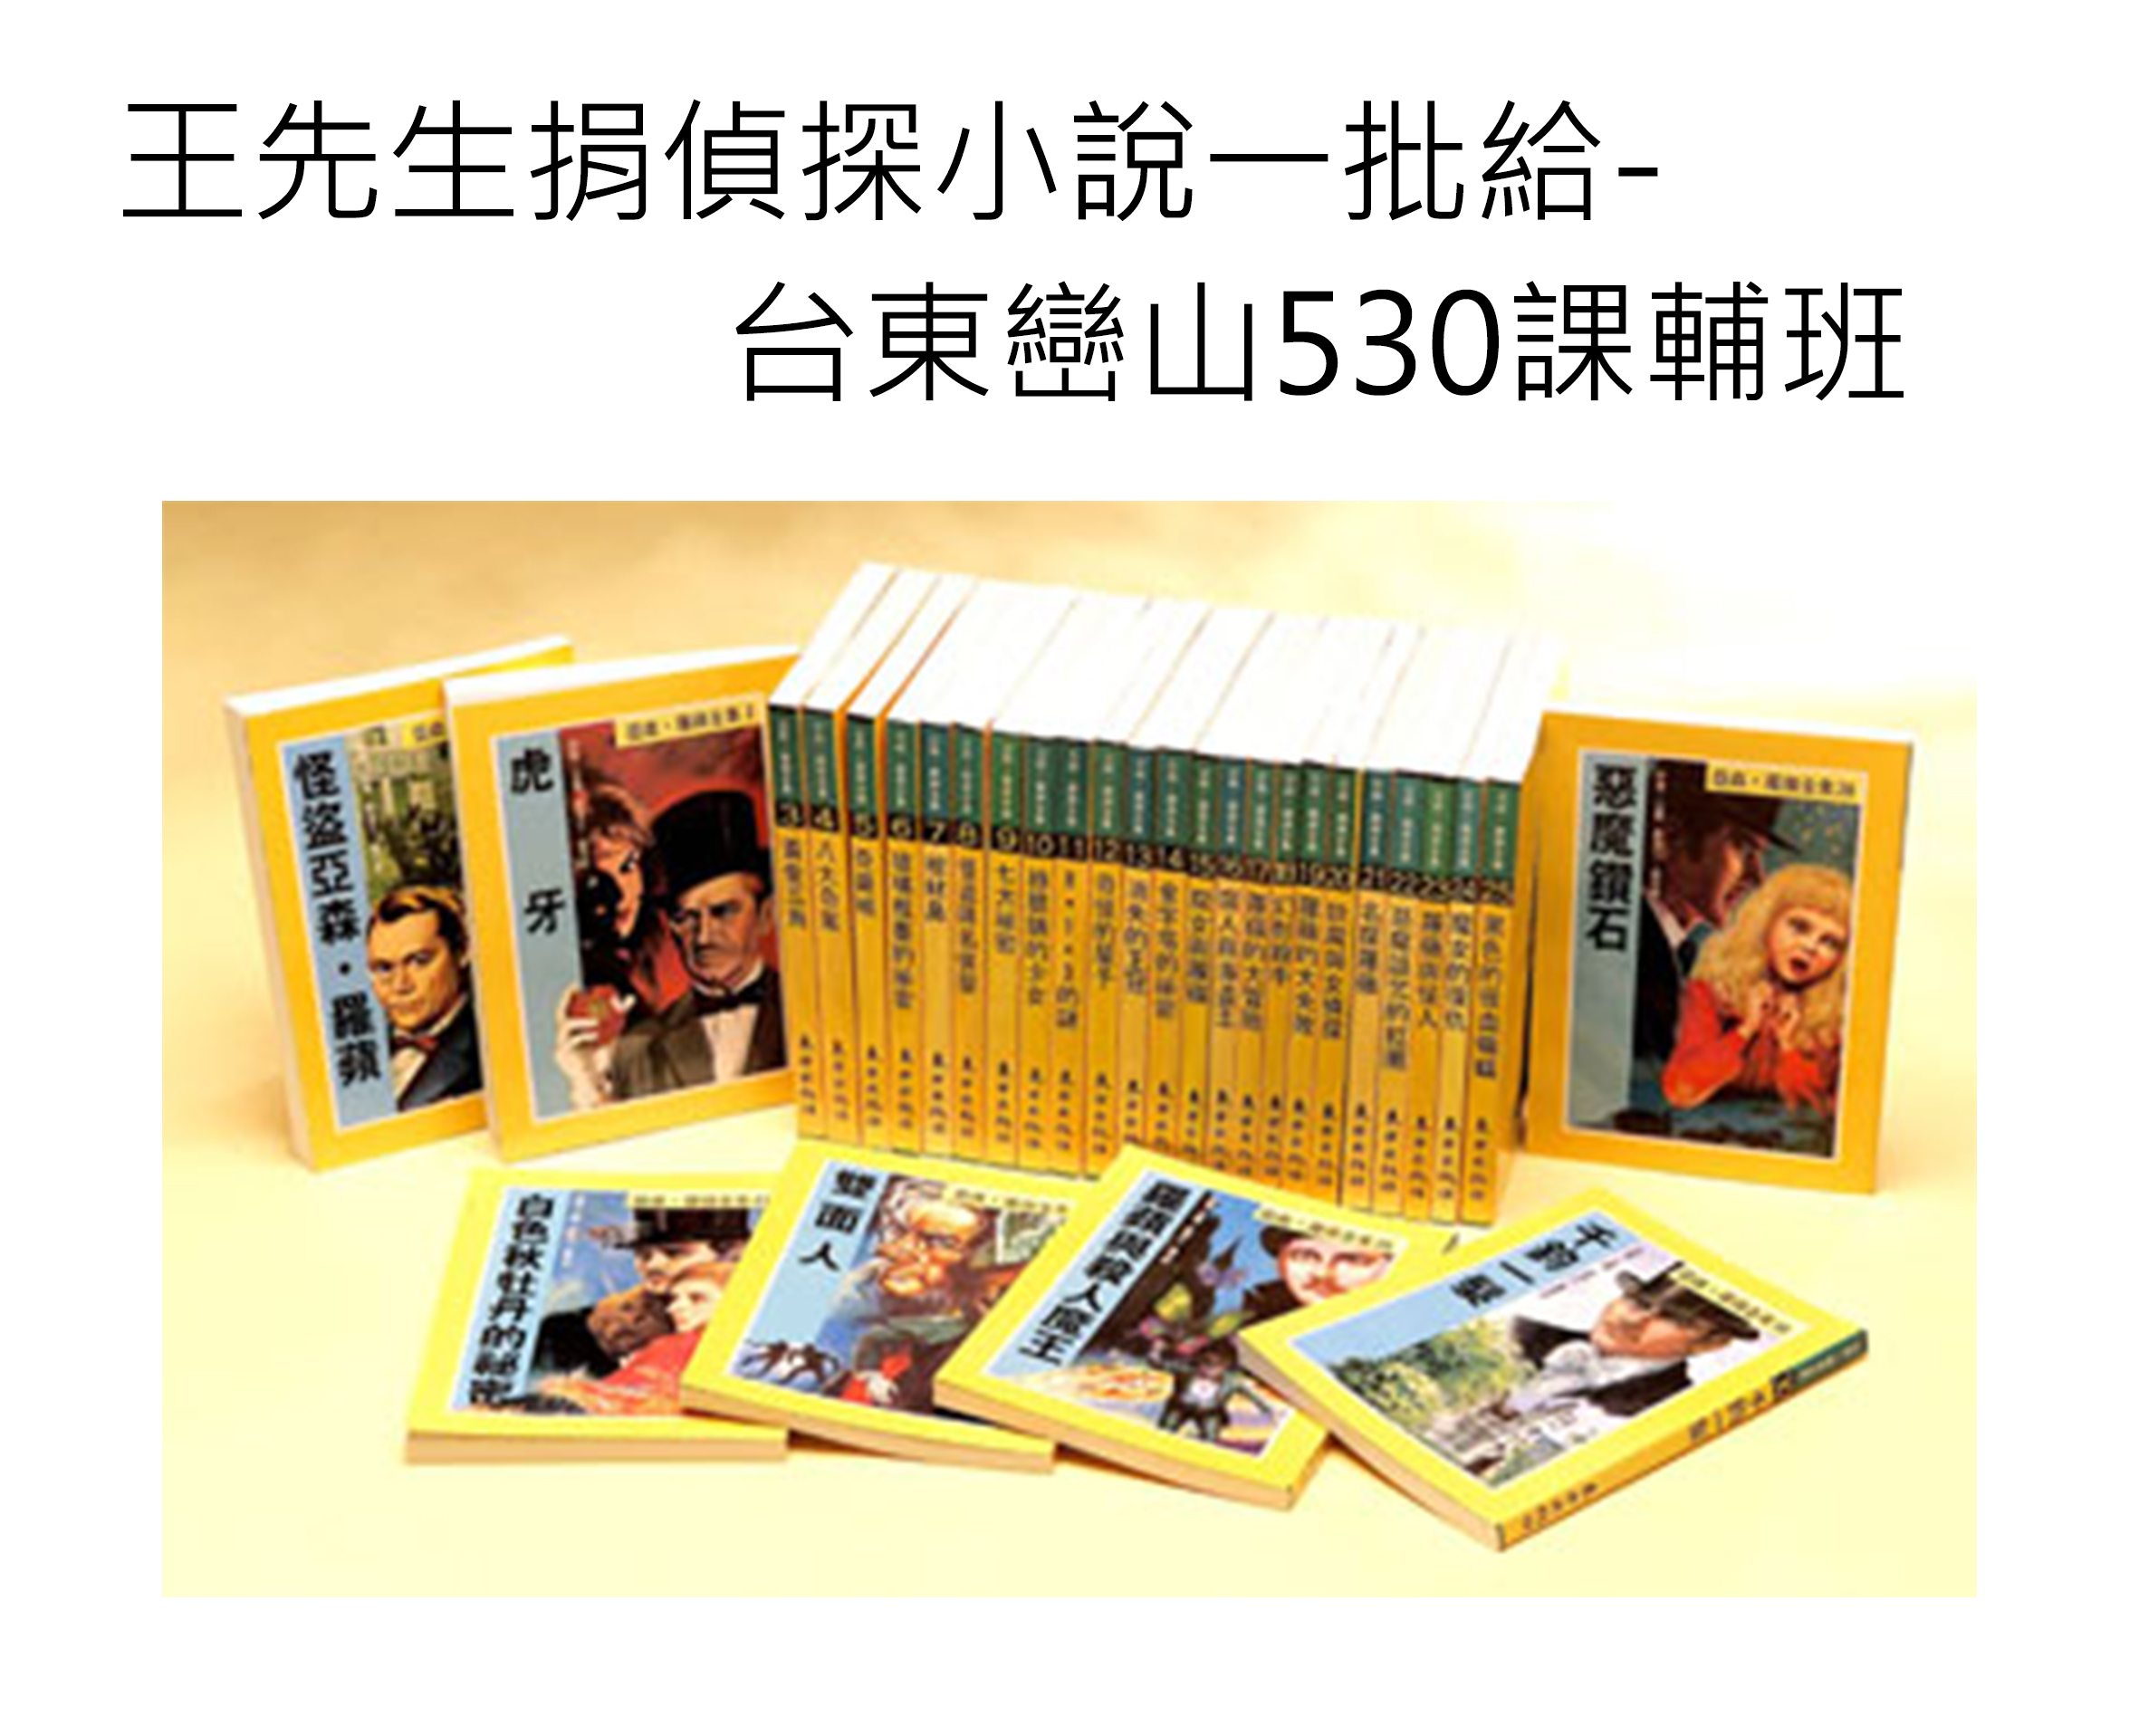 [已完成]王先生捐偵探小說一批給                 台東巒山530課輔班